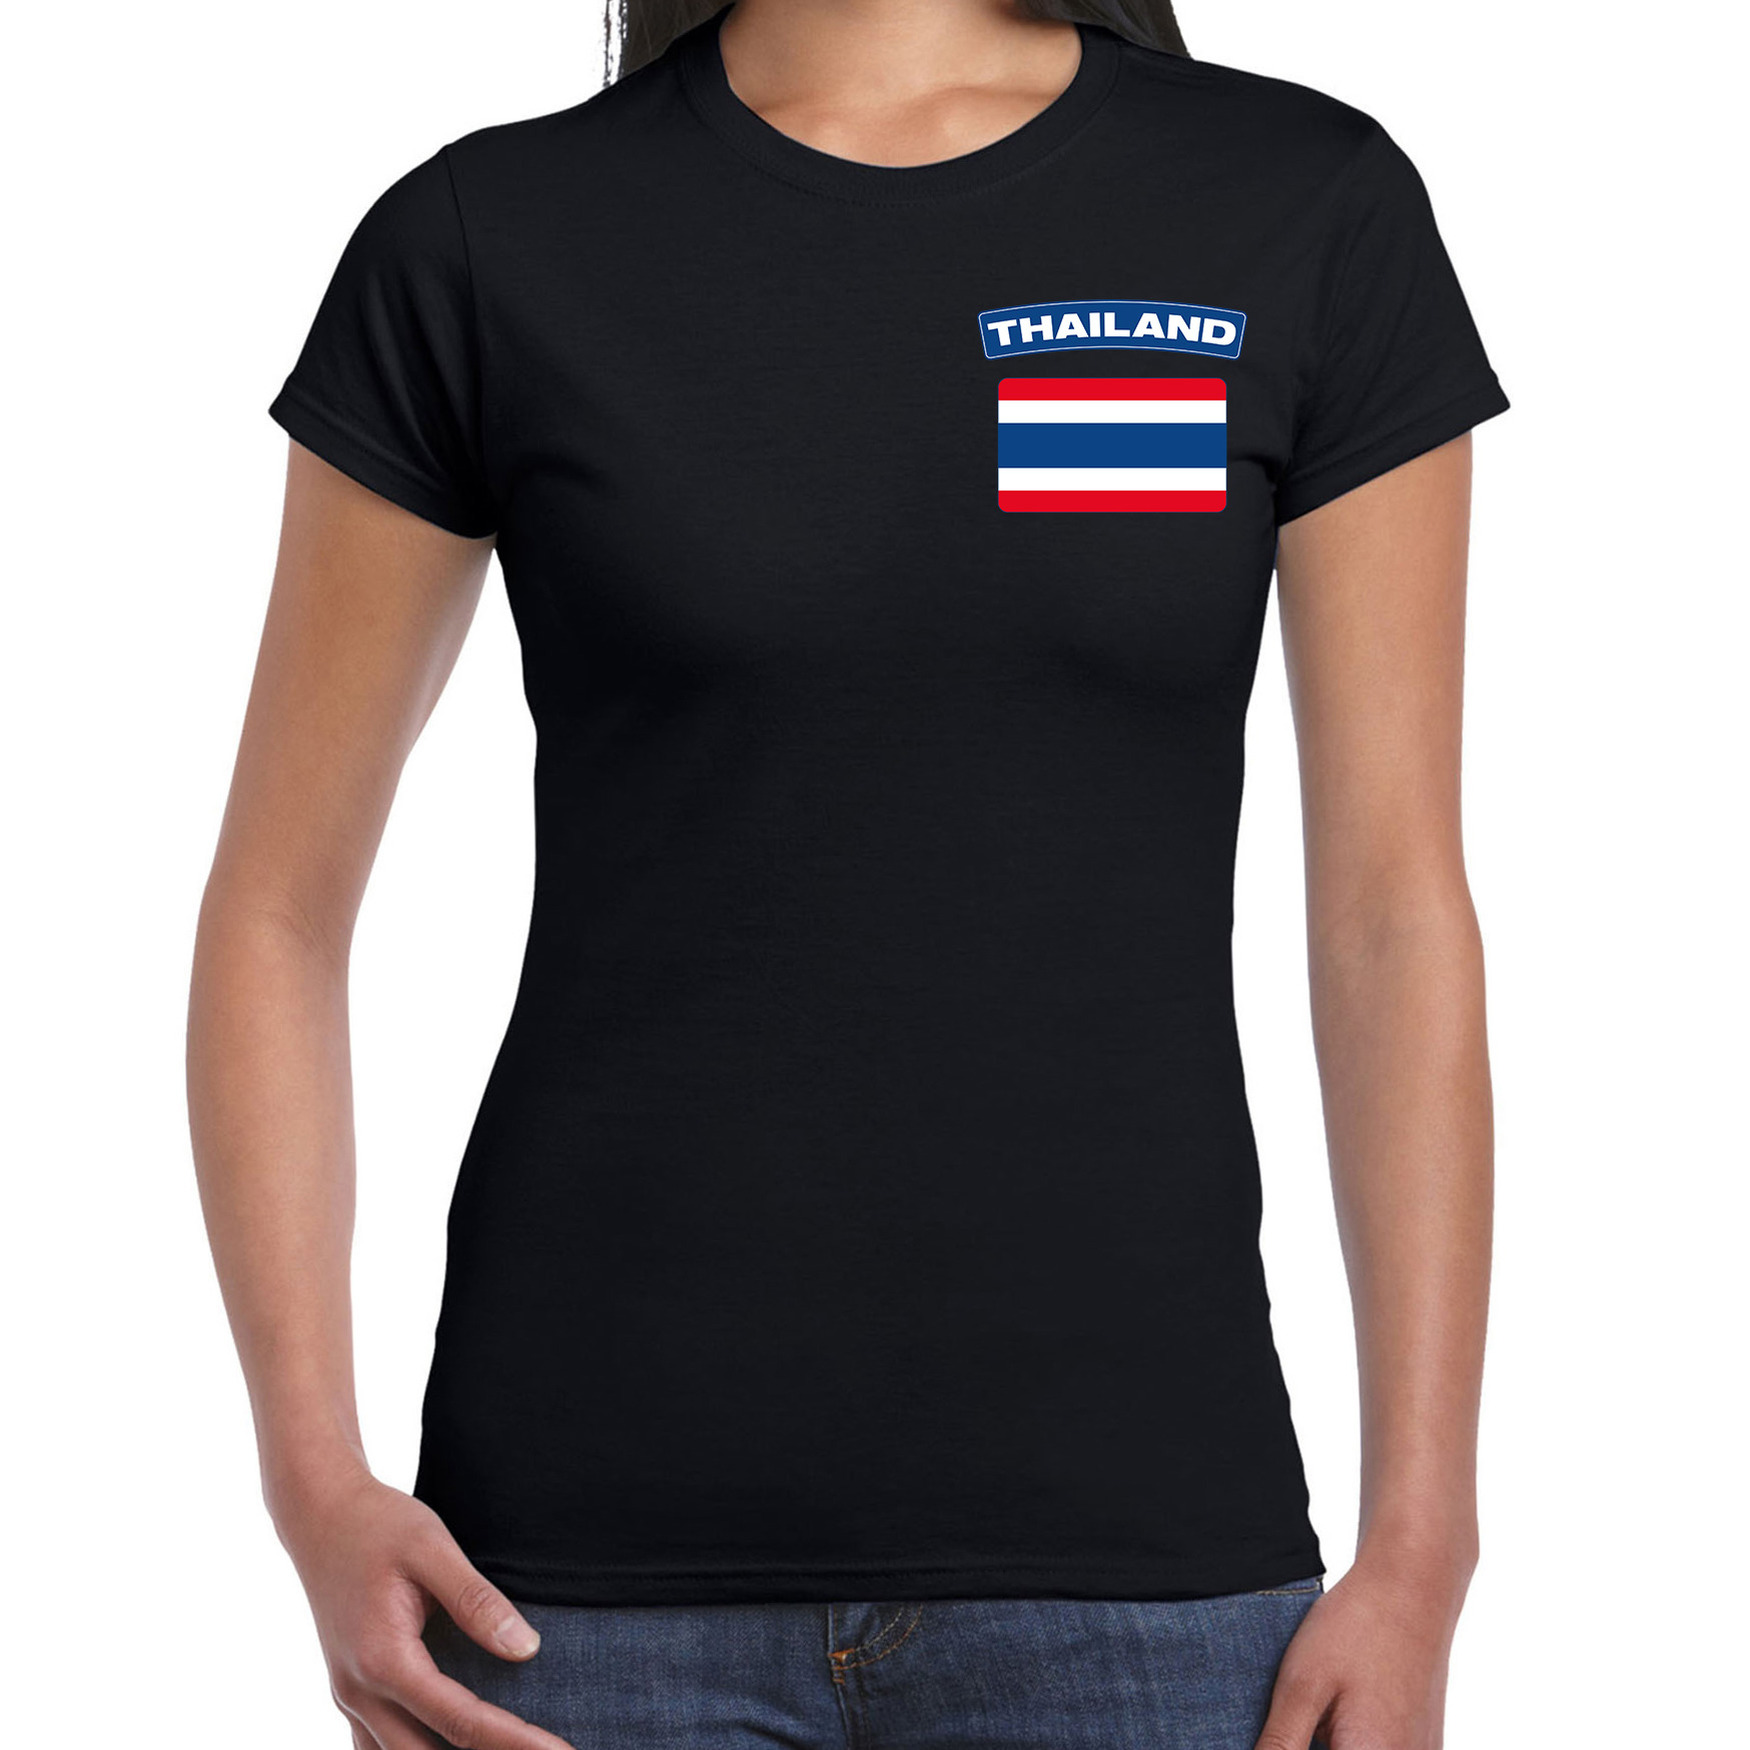 Thailand t shirt met vlag zwart op borst voor dames